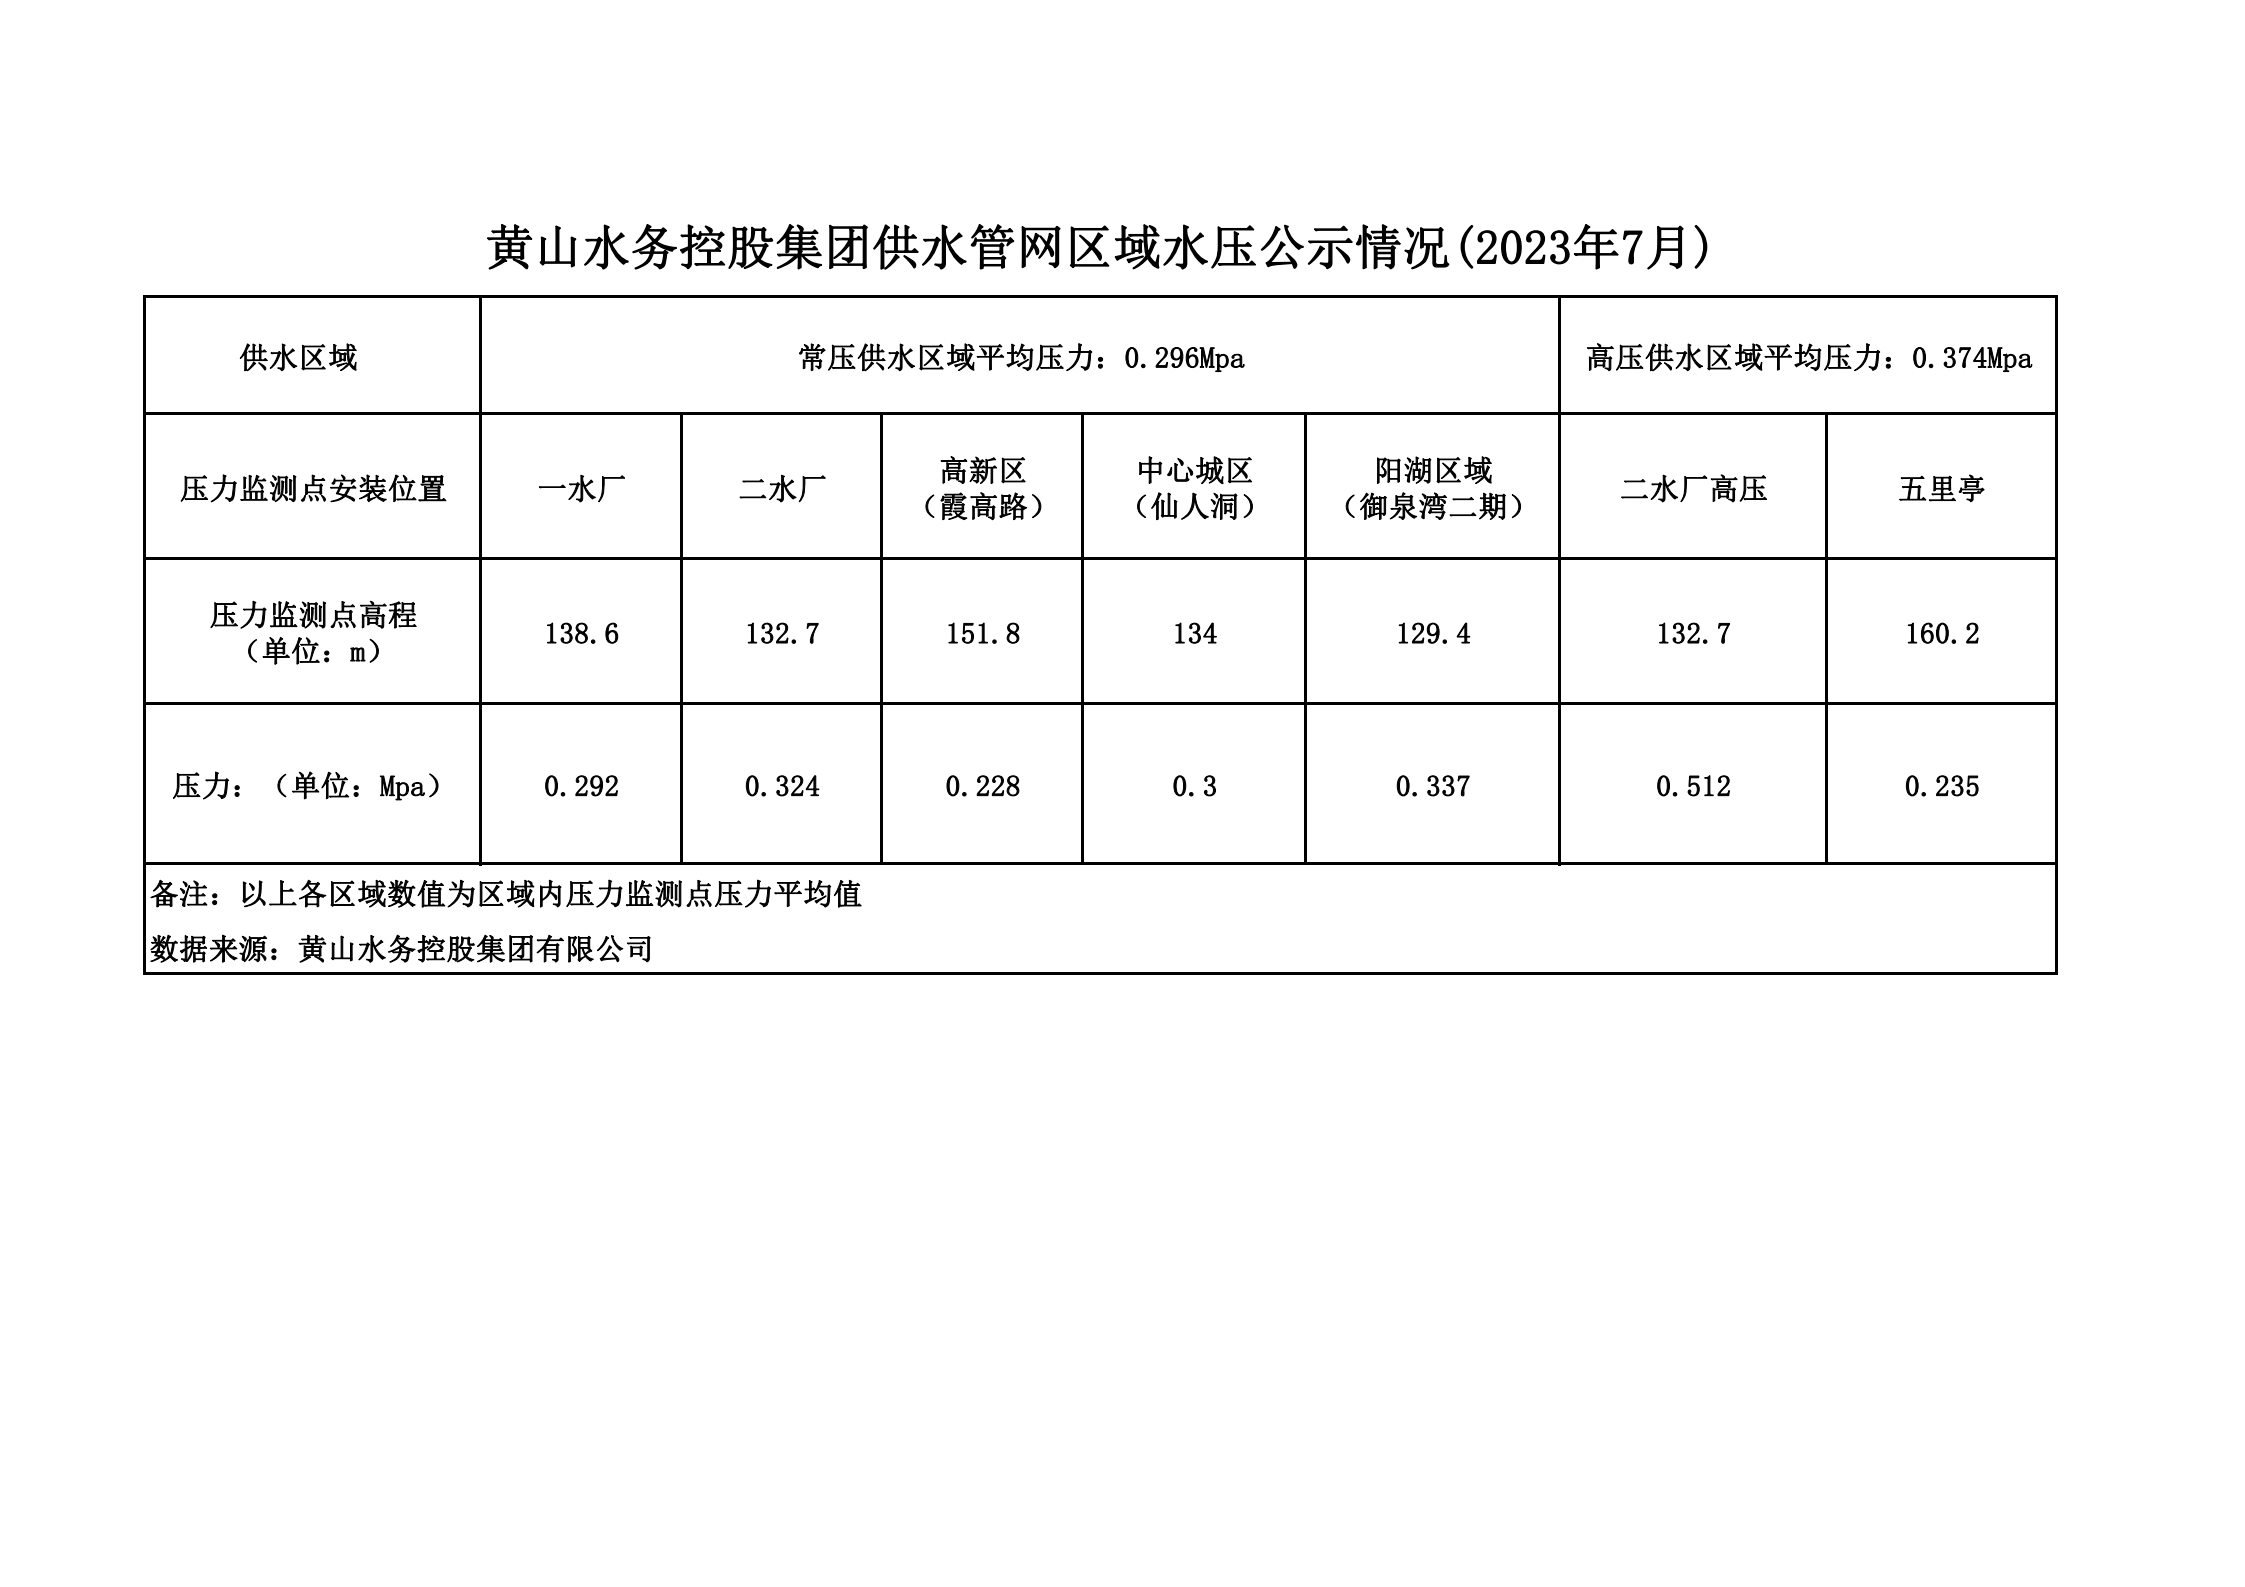 黄山水务控股集团供水管网区域水压公示情况(2023年7月)_00.png